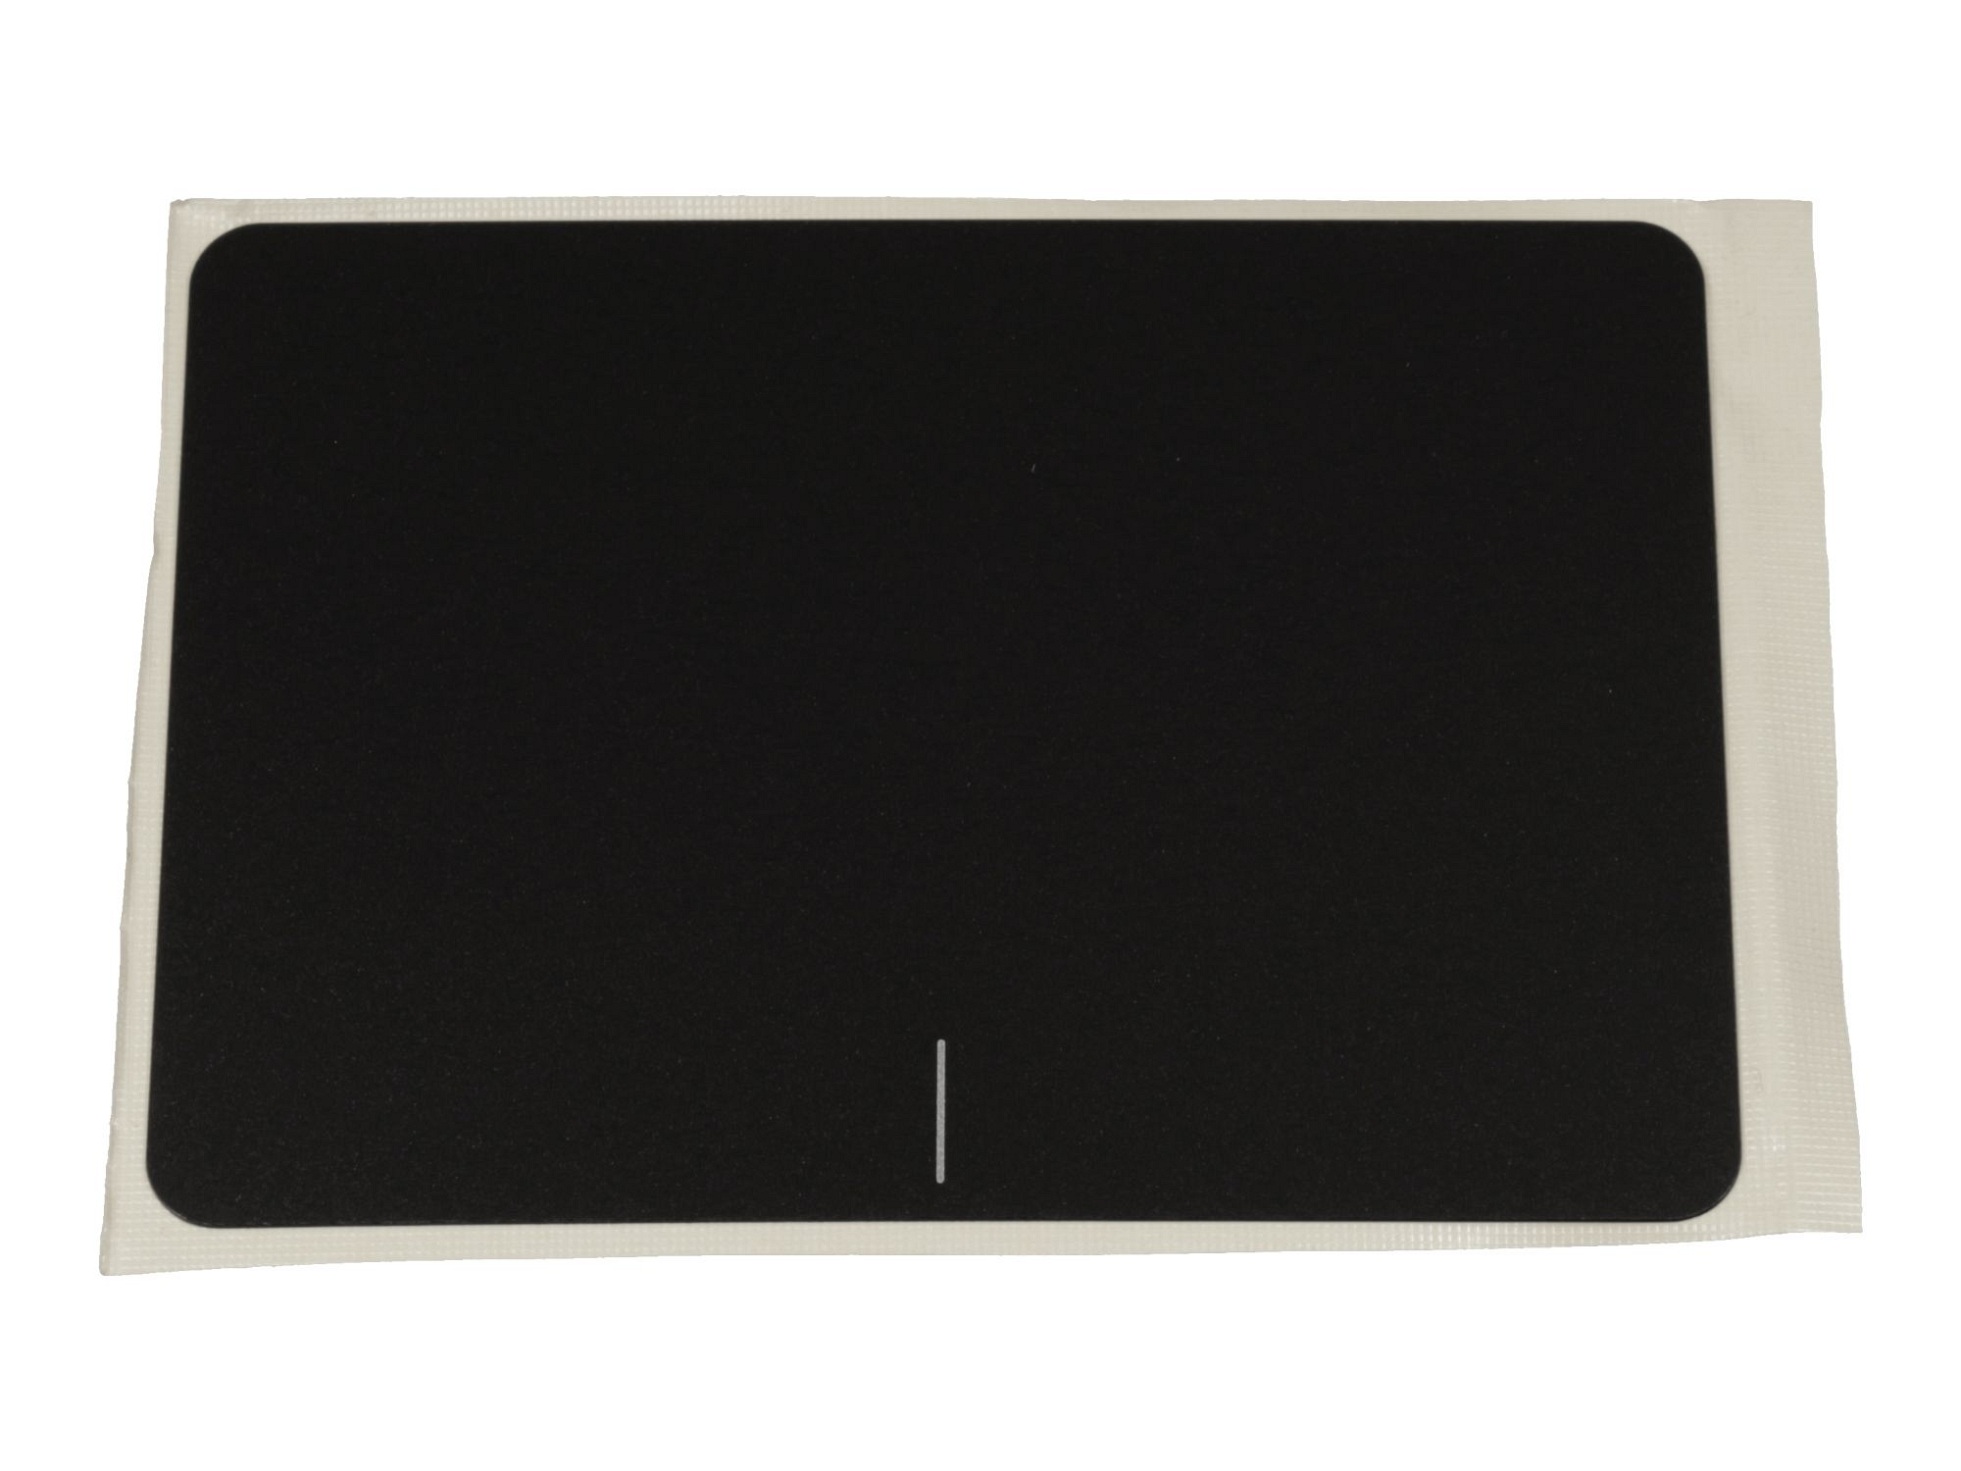 Touchpad Abdeckung schwarz für Asus VivoBook F556UR